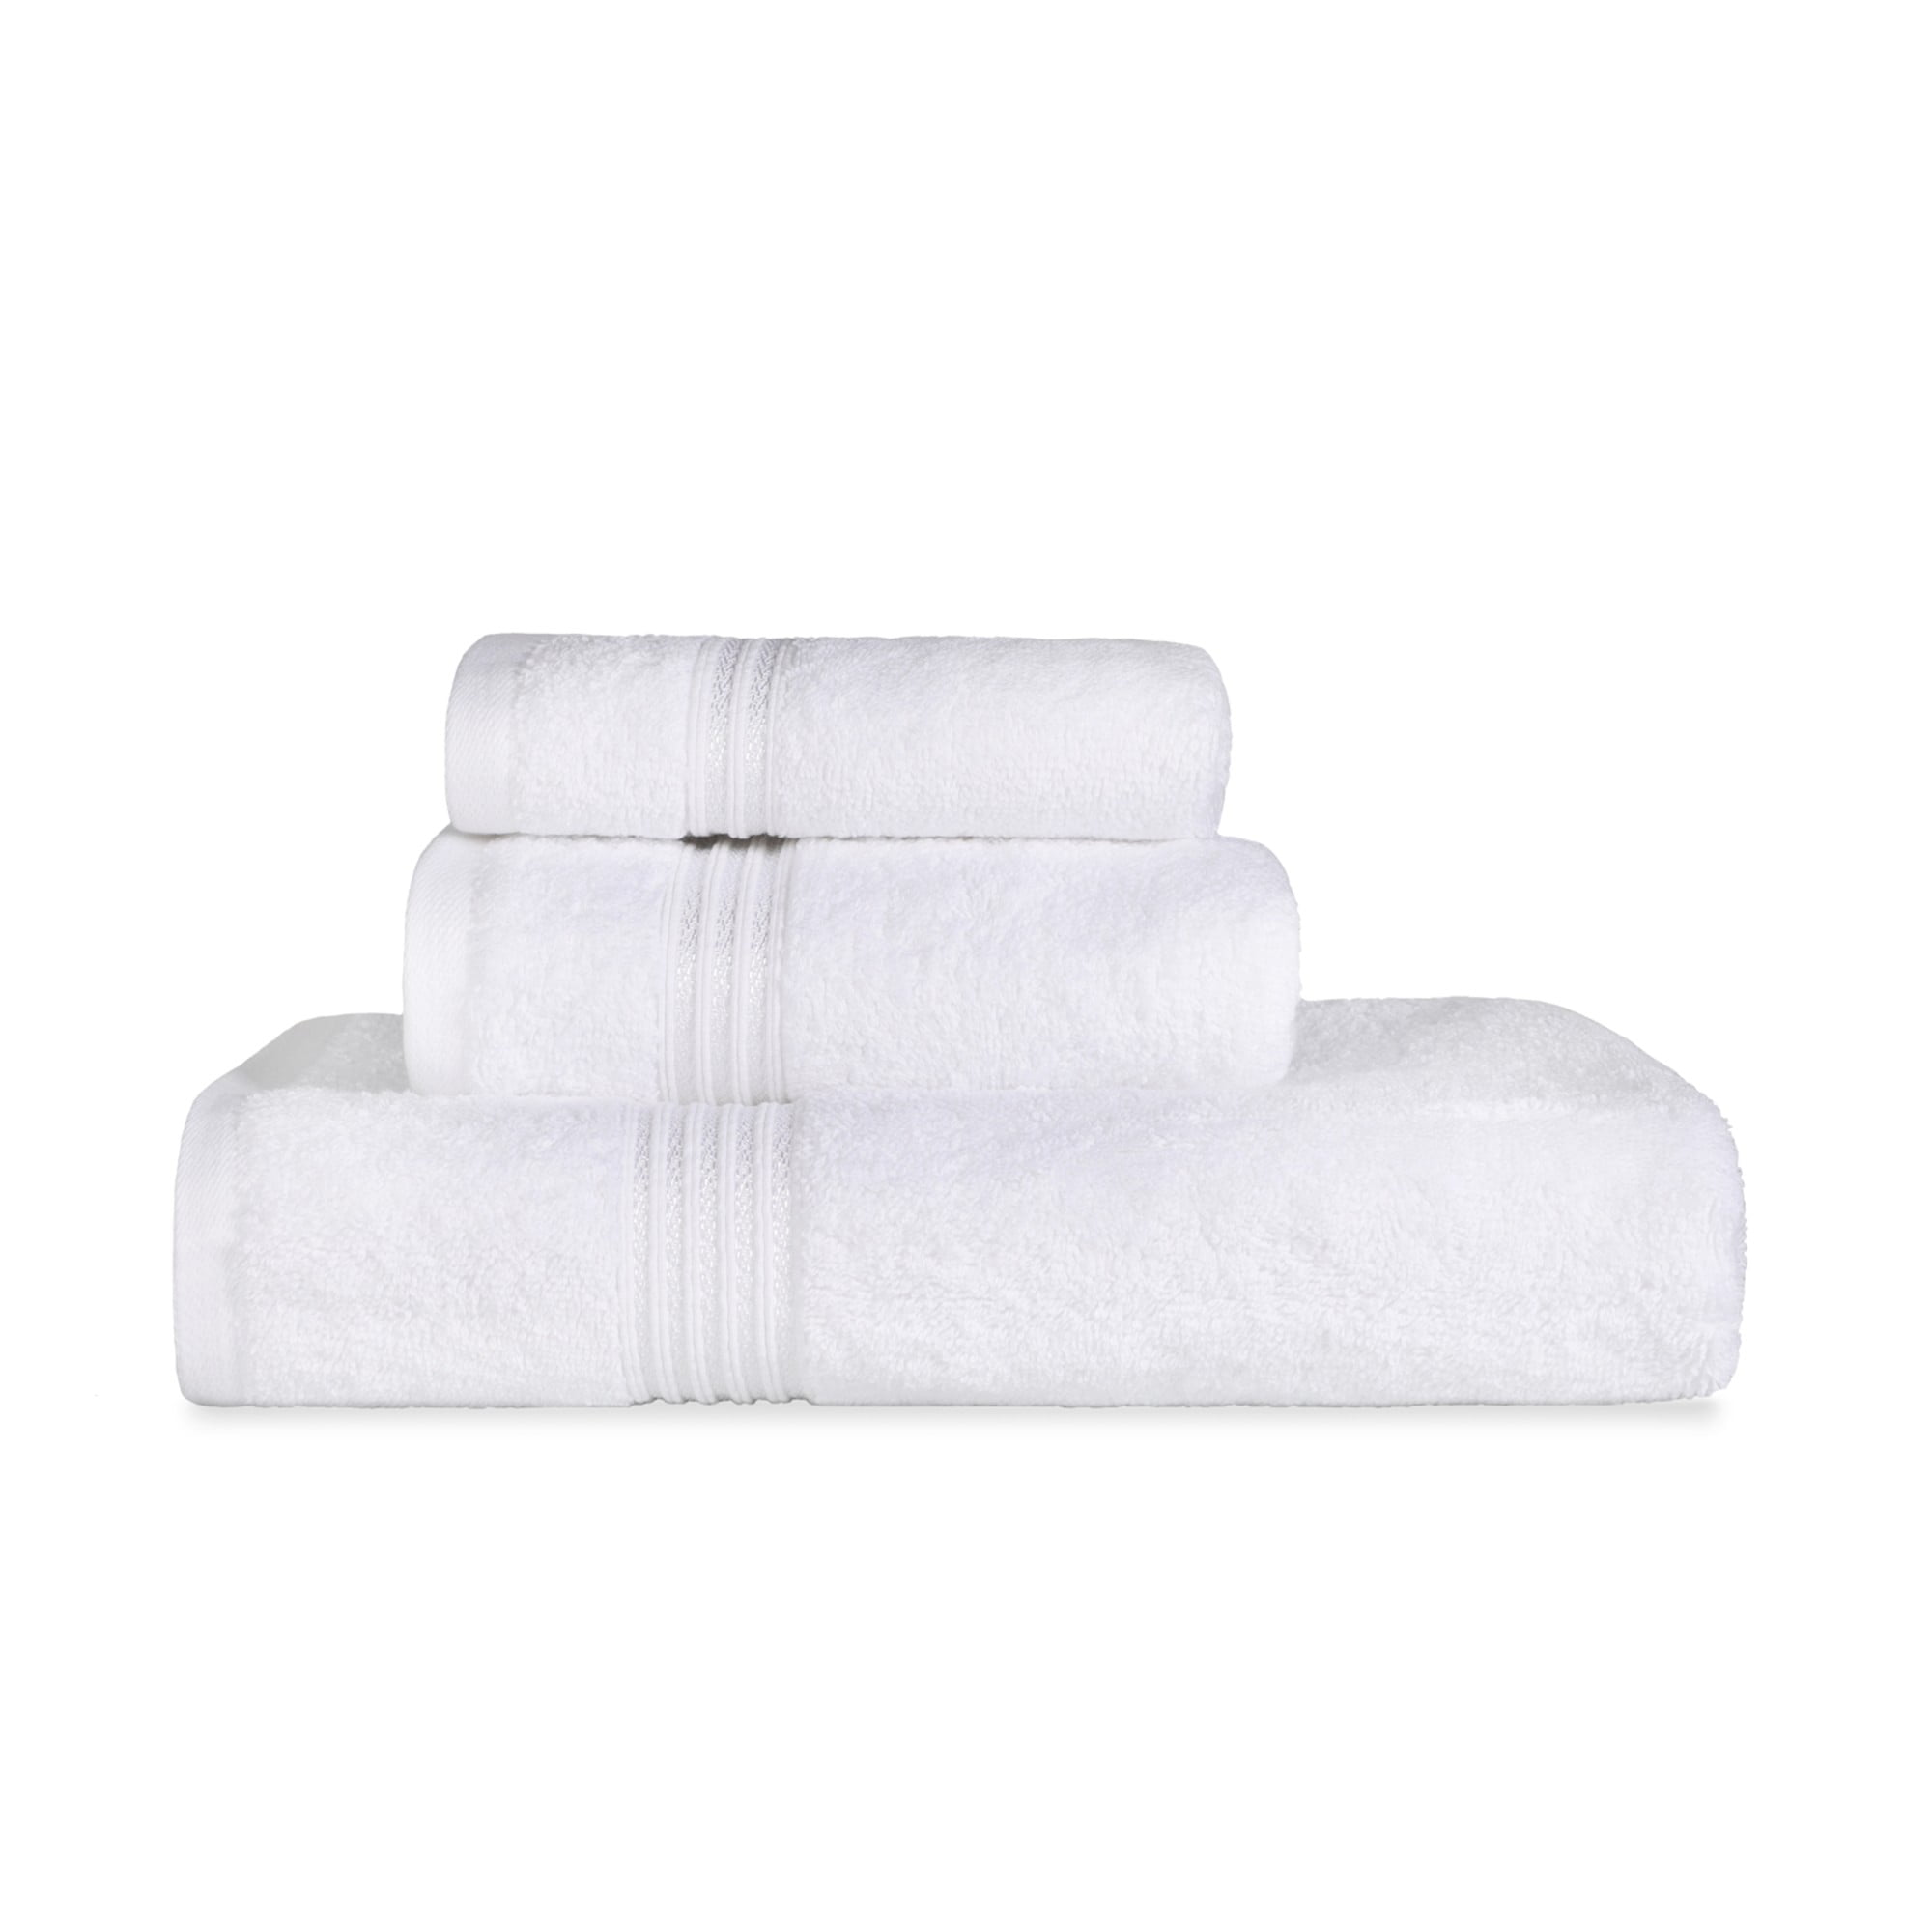 3Pcs/Lot Fiber Cotton Towel Men Absorbent Beach Bath Towel For Bathroom Acce Top 